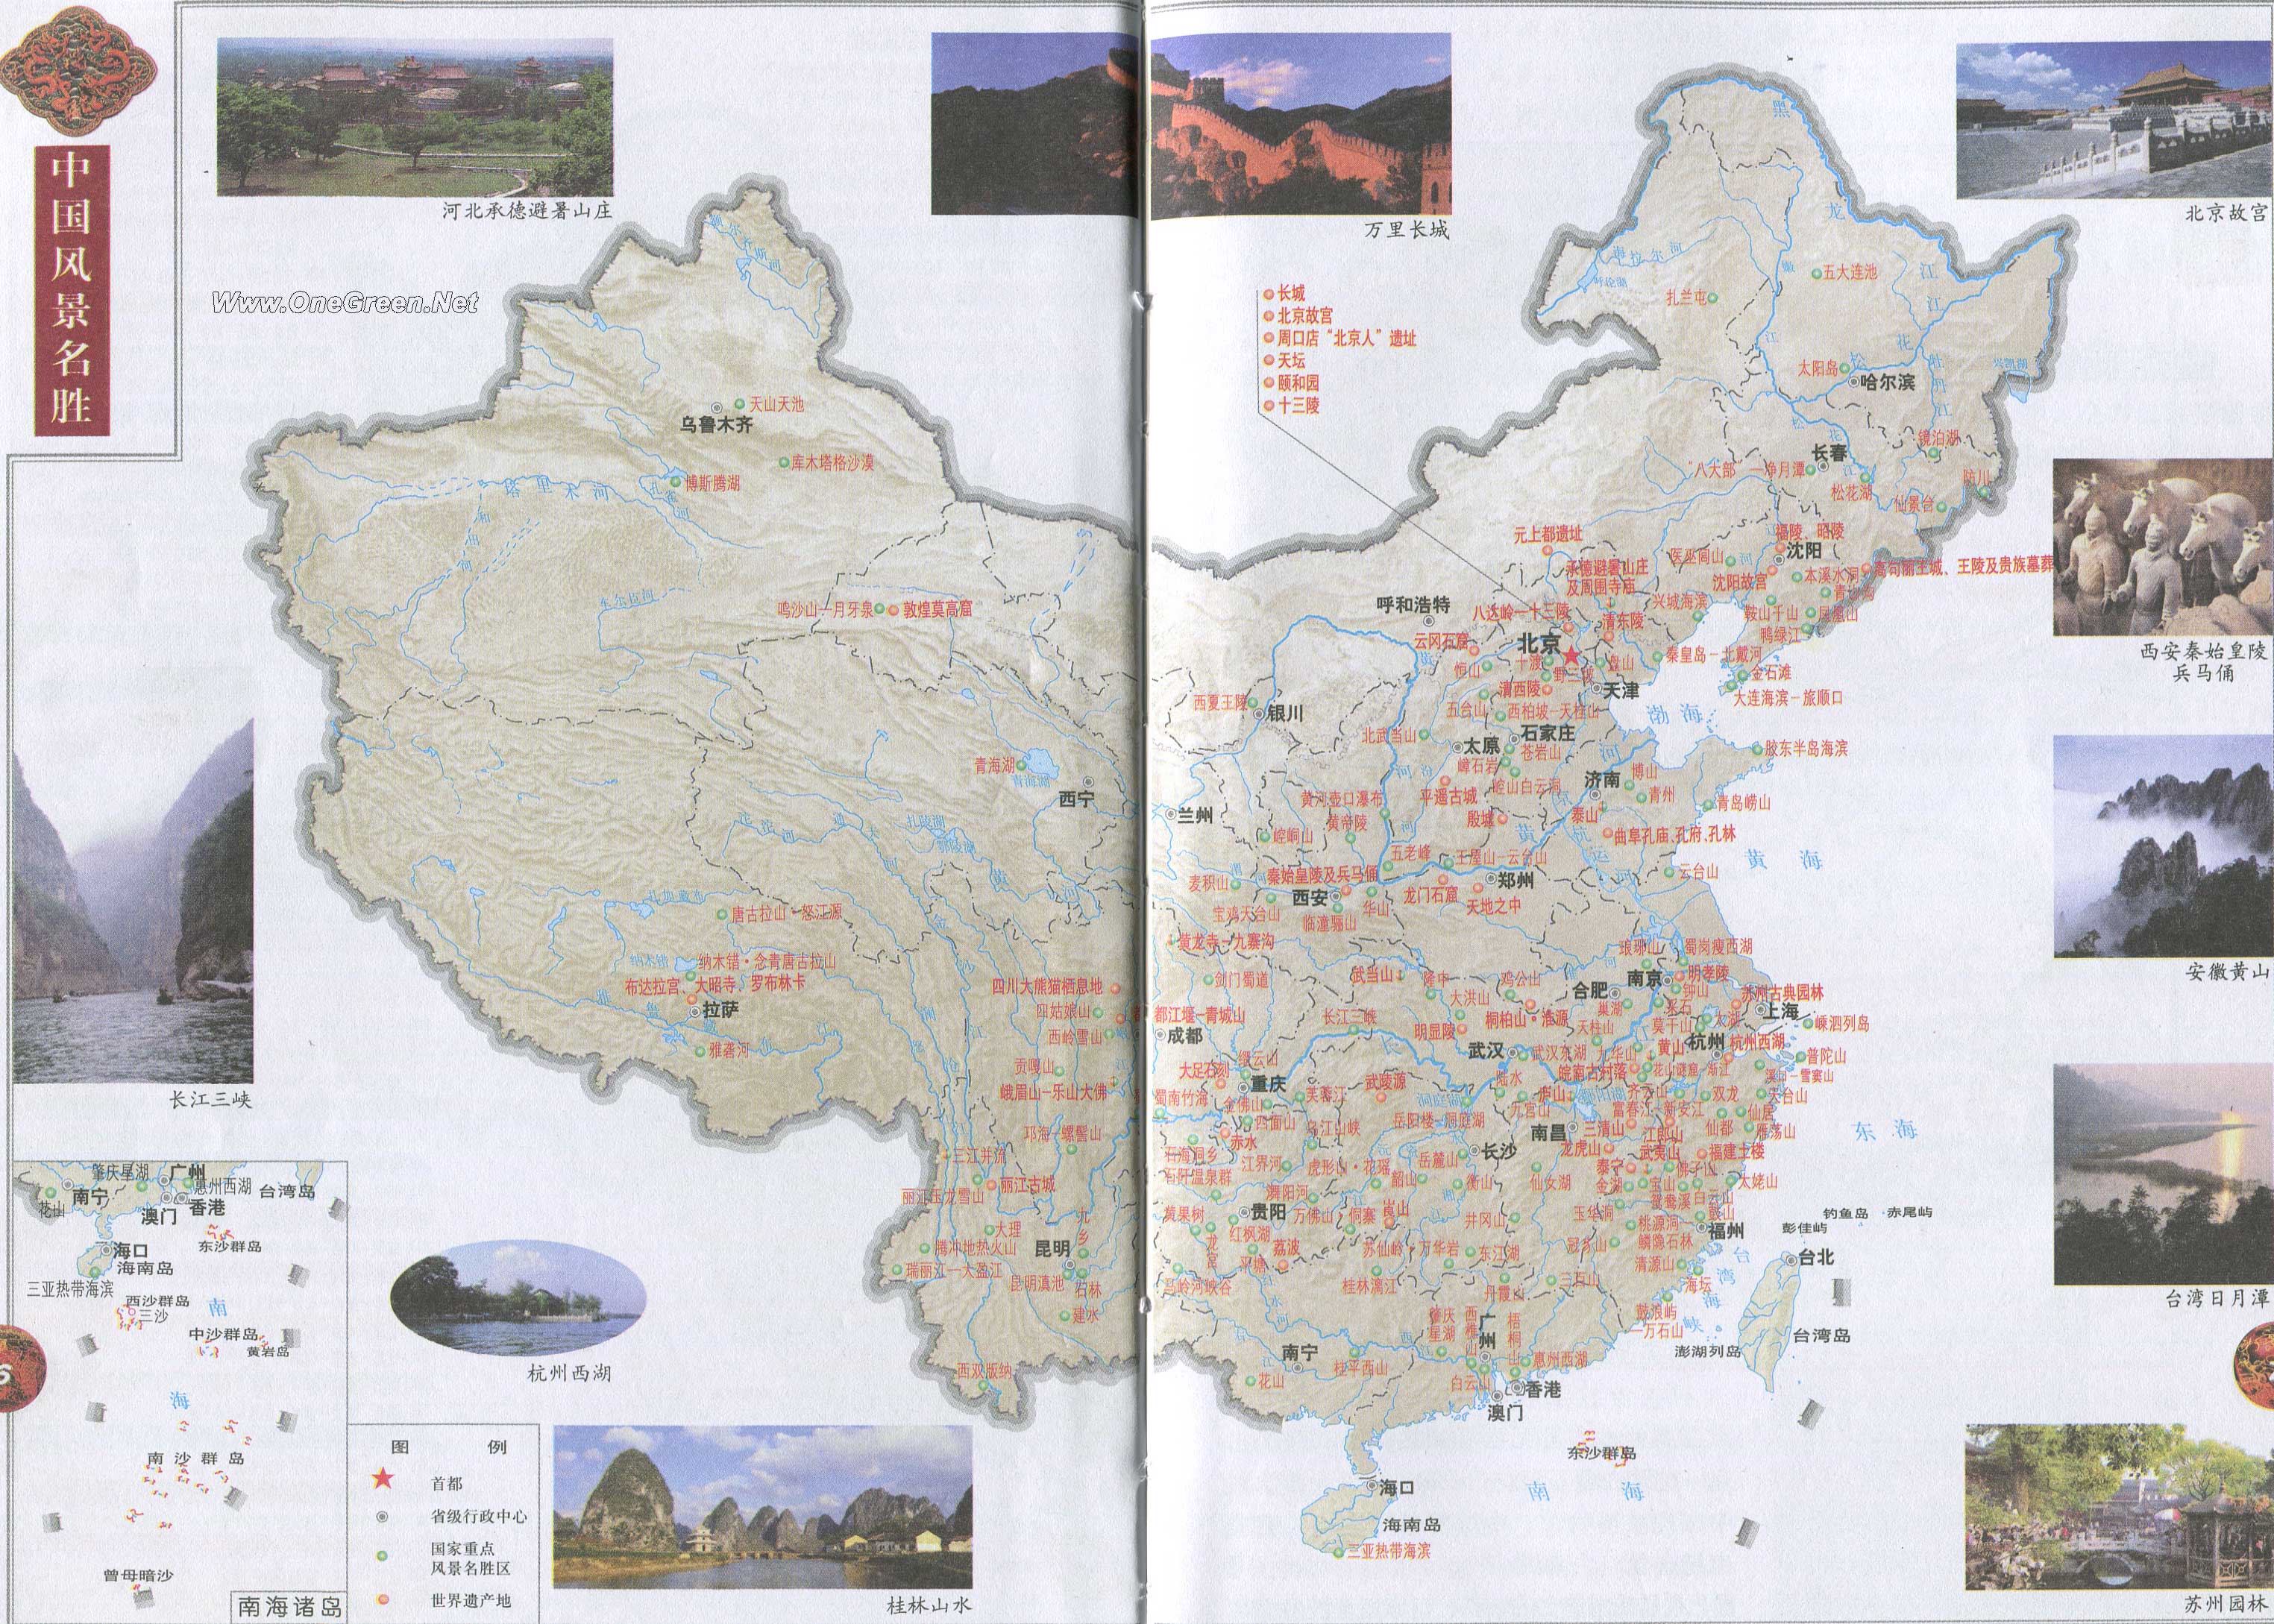 中国风景名胜分布地图